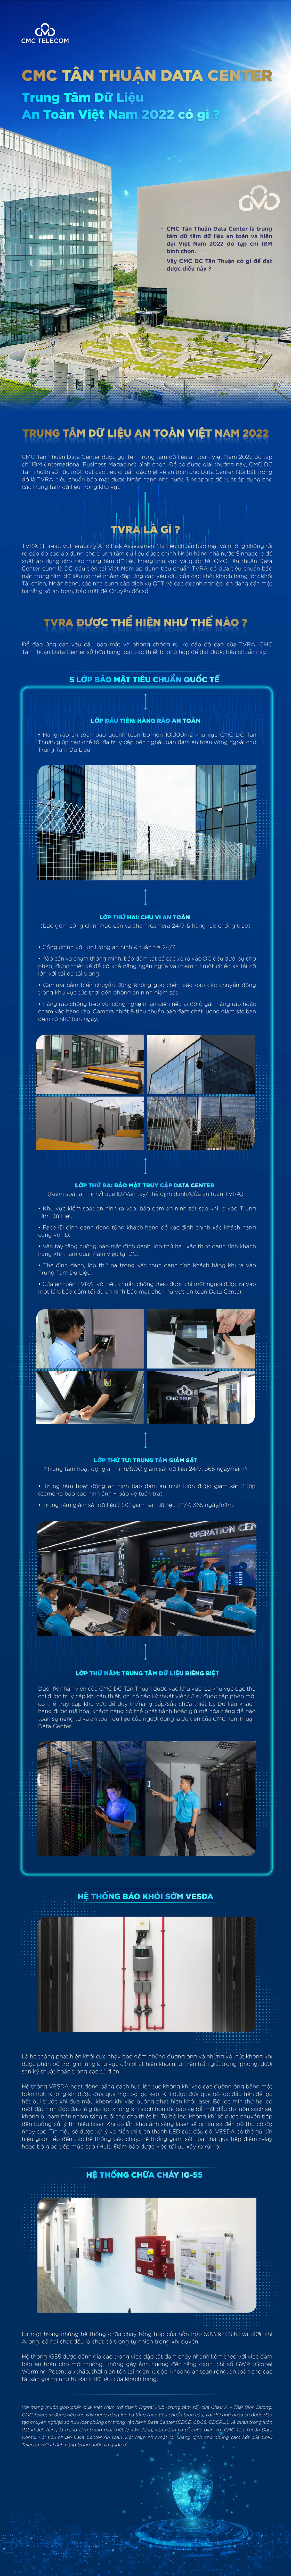 [Tin công nghệ mới] Trung tâm dữ liệu an toàn CMC Tân Thuận Data Center có gì?